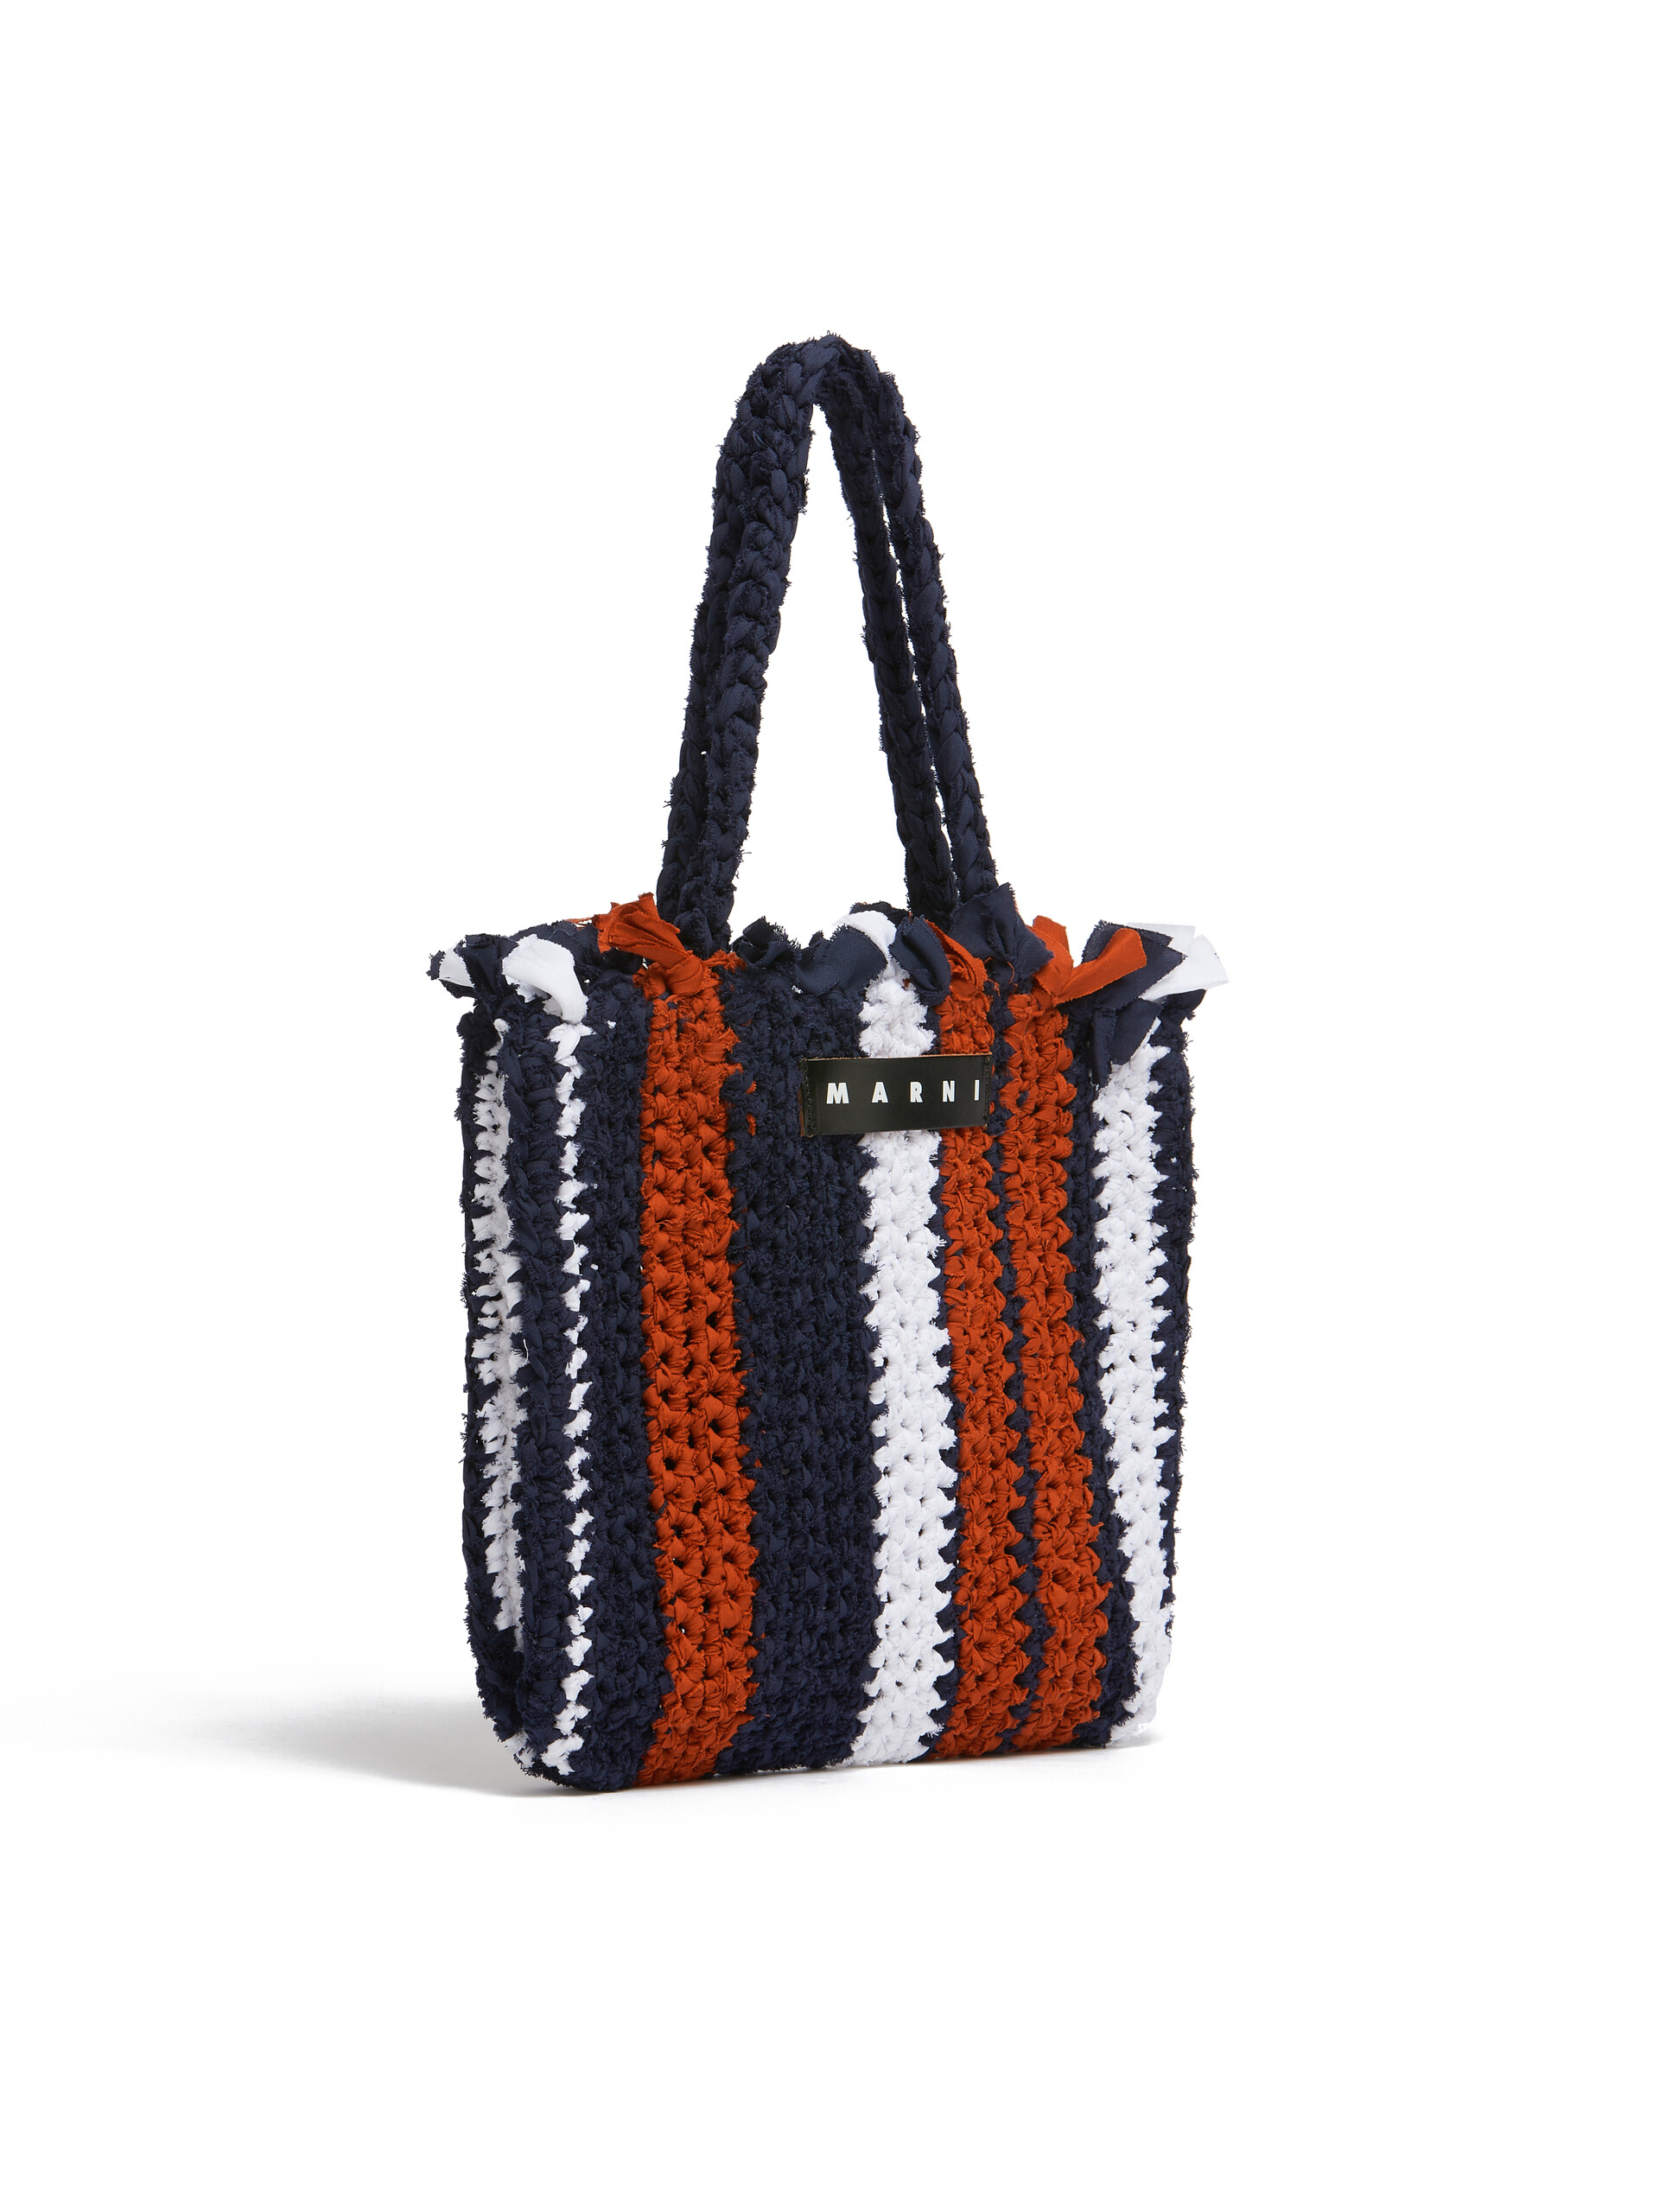 MARNI MARKET JERSEY Tasche aus Baumwolle in Rosa und Blau - Shopper - Image 2